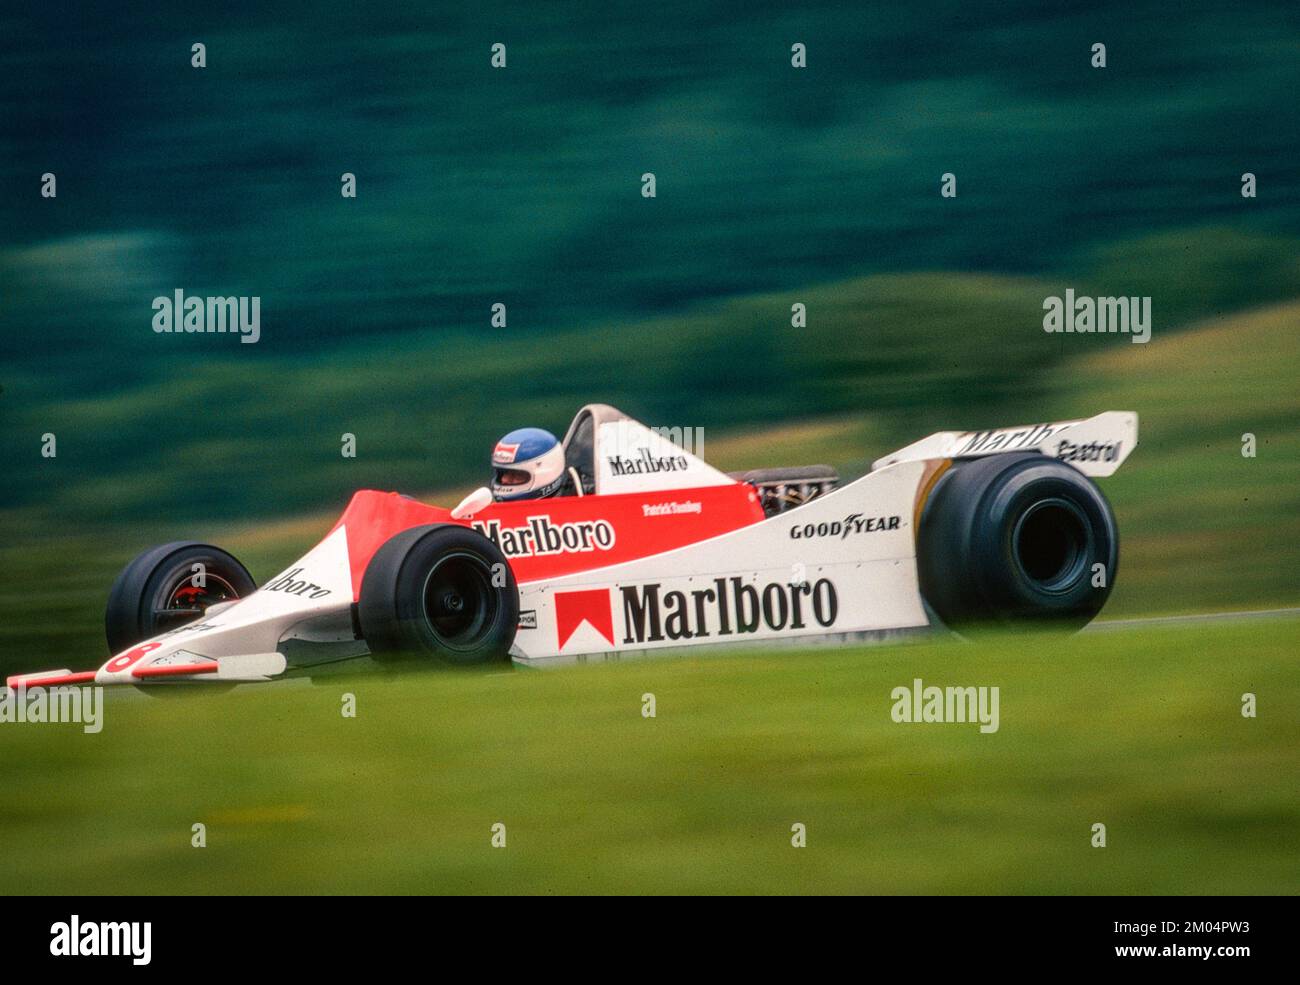 08 Tambay Patrick (FRA), Marlboro Team McLaren, McLaren-Ford M29, Action während des österreichischen Grand Prix 1979, 11.. Runde der FIA Formel 1 Weltmeisterschaft, auf dem Osterreichring, vom 10. Bis 12. August 1979 in Spielberg, Österreich - Foto-DPPI Stockfoto